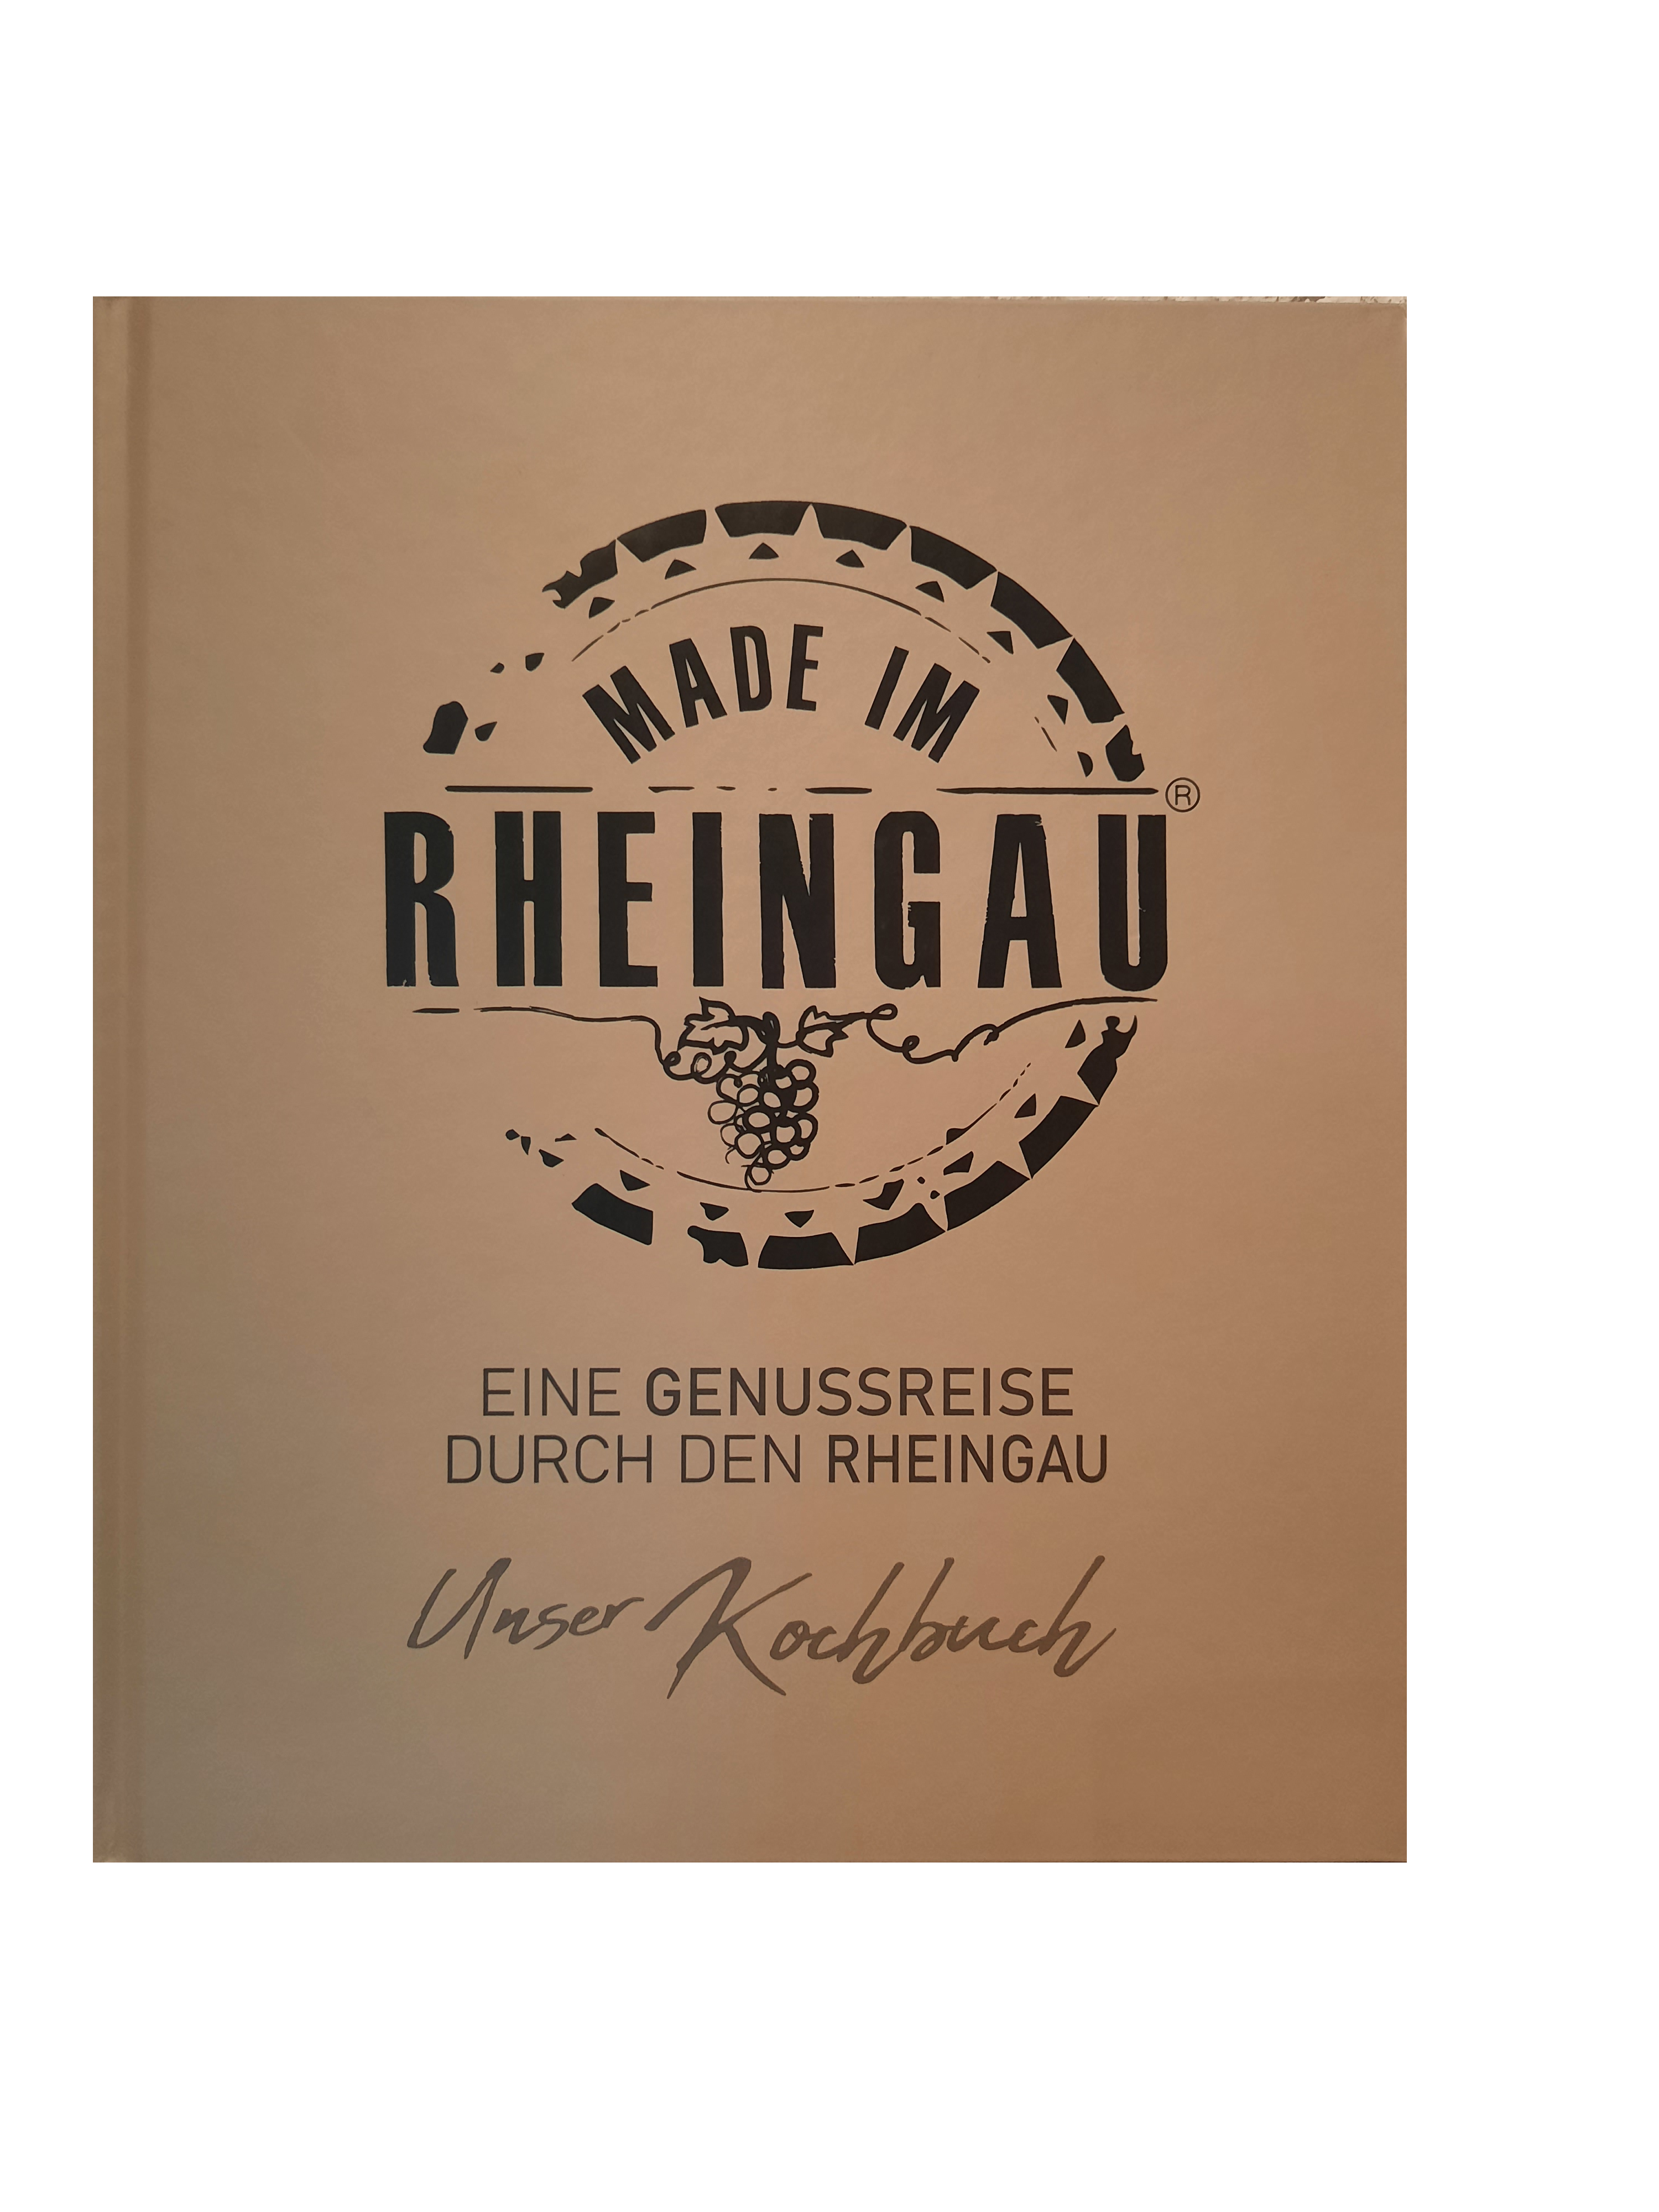 Rheingauer Kochbuch - Made im Rheingau - Unsere Weine | Weingut ...